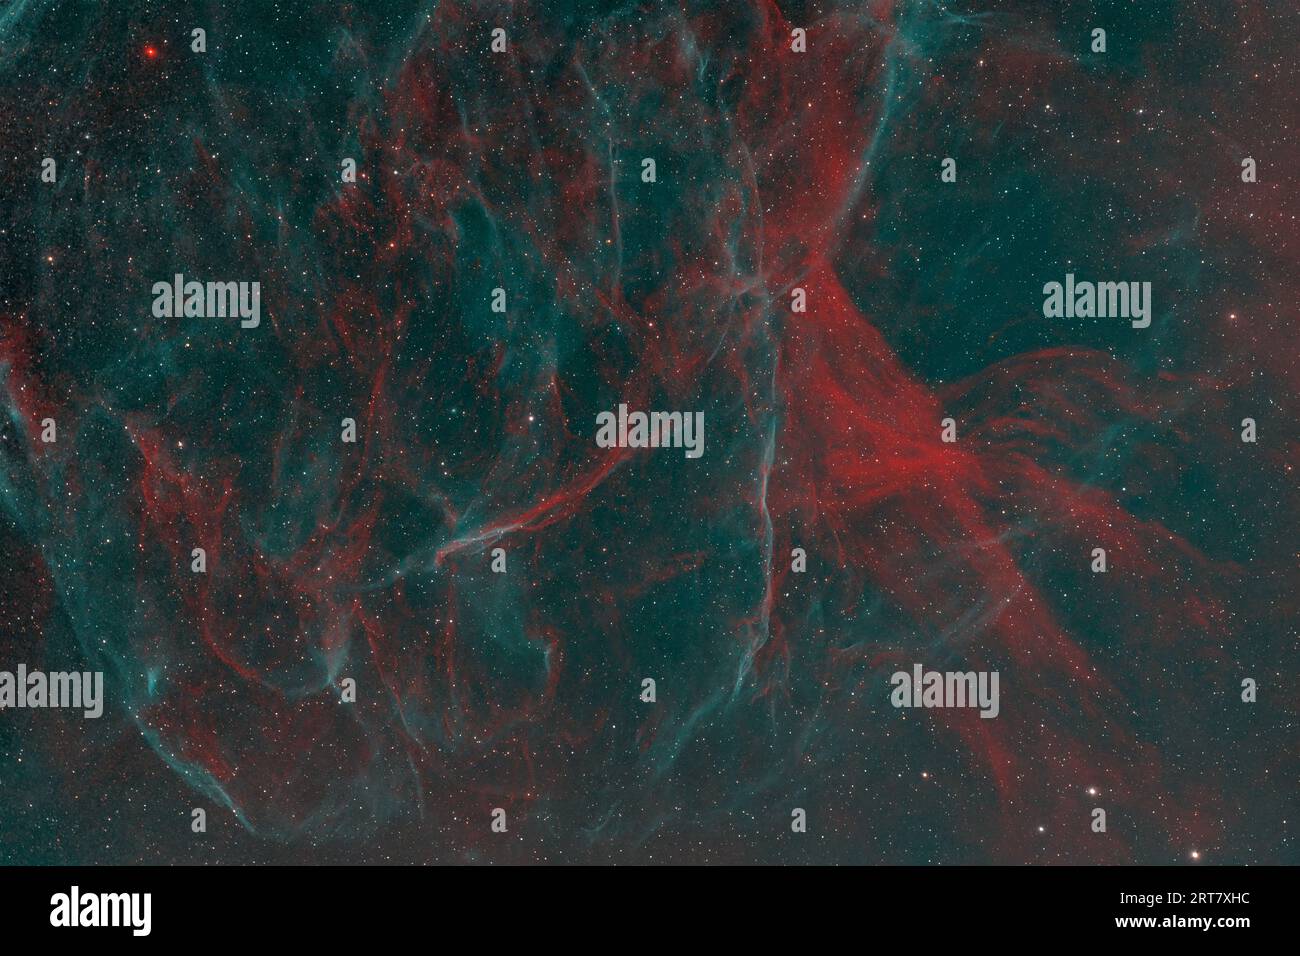 SH2-96 un vestige de supernova chez Cygne Banque D'Images